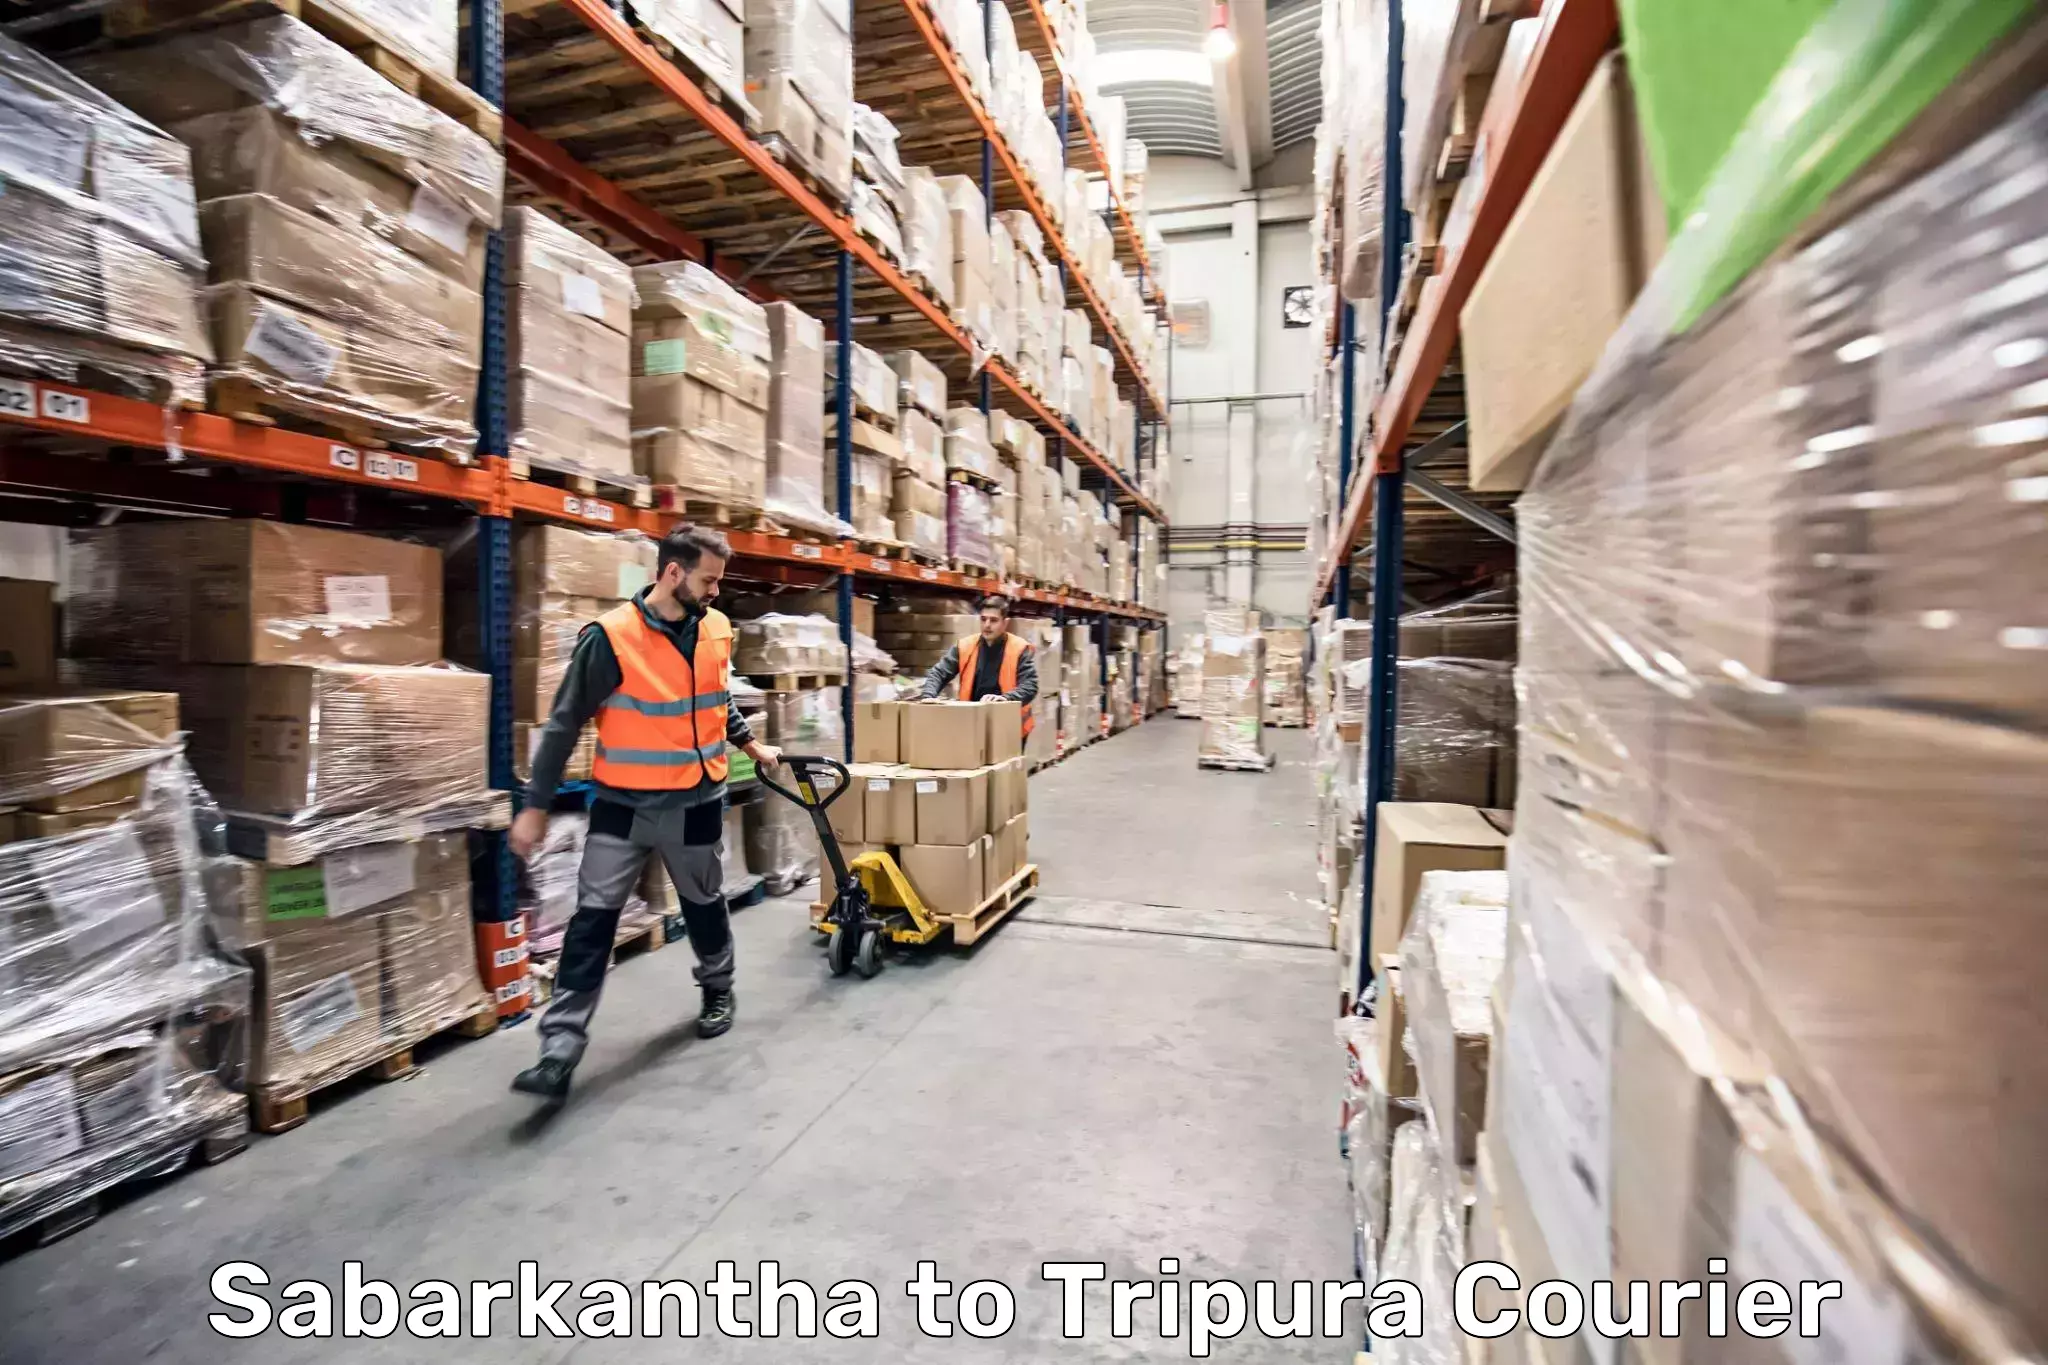 Luggage shipment specialists Sabarkantha to Sonamura